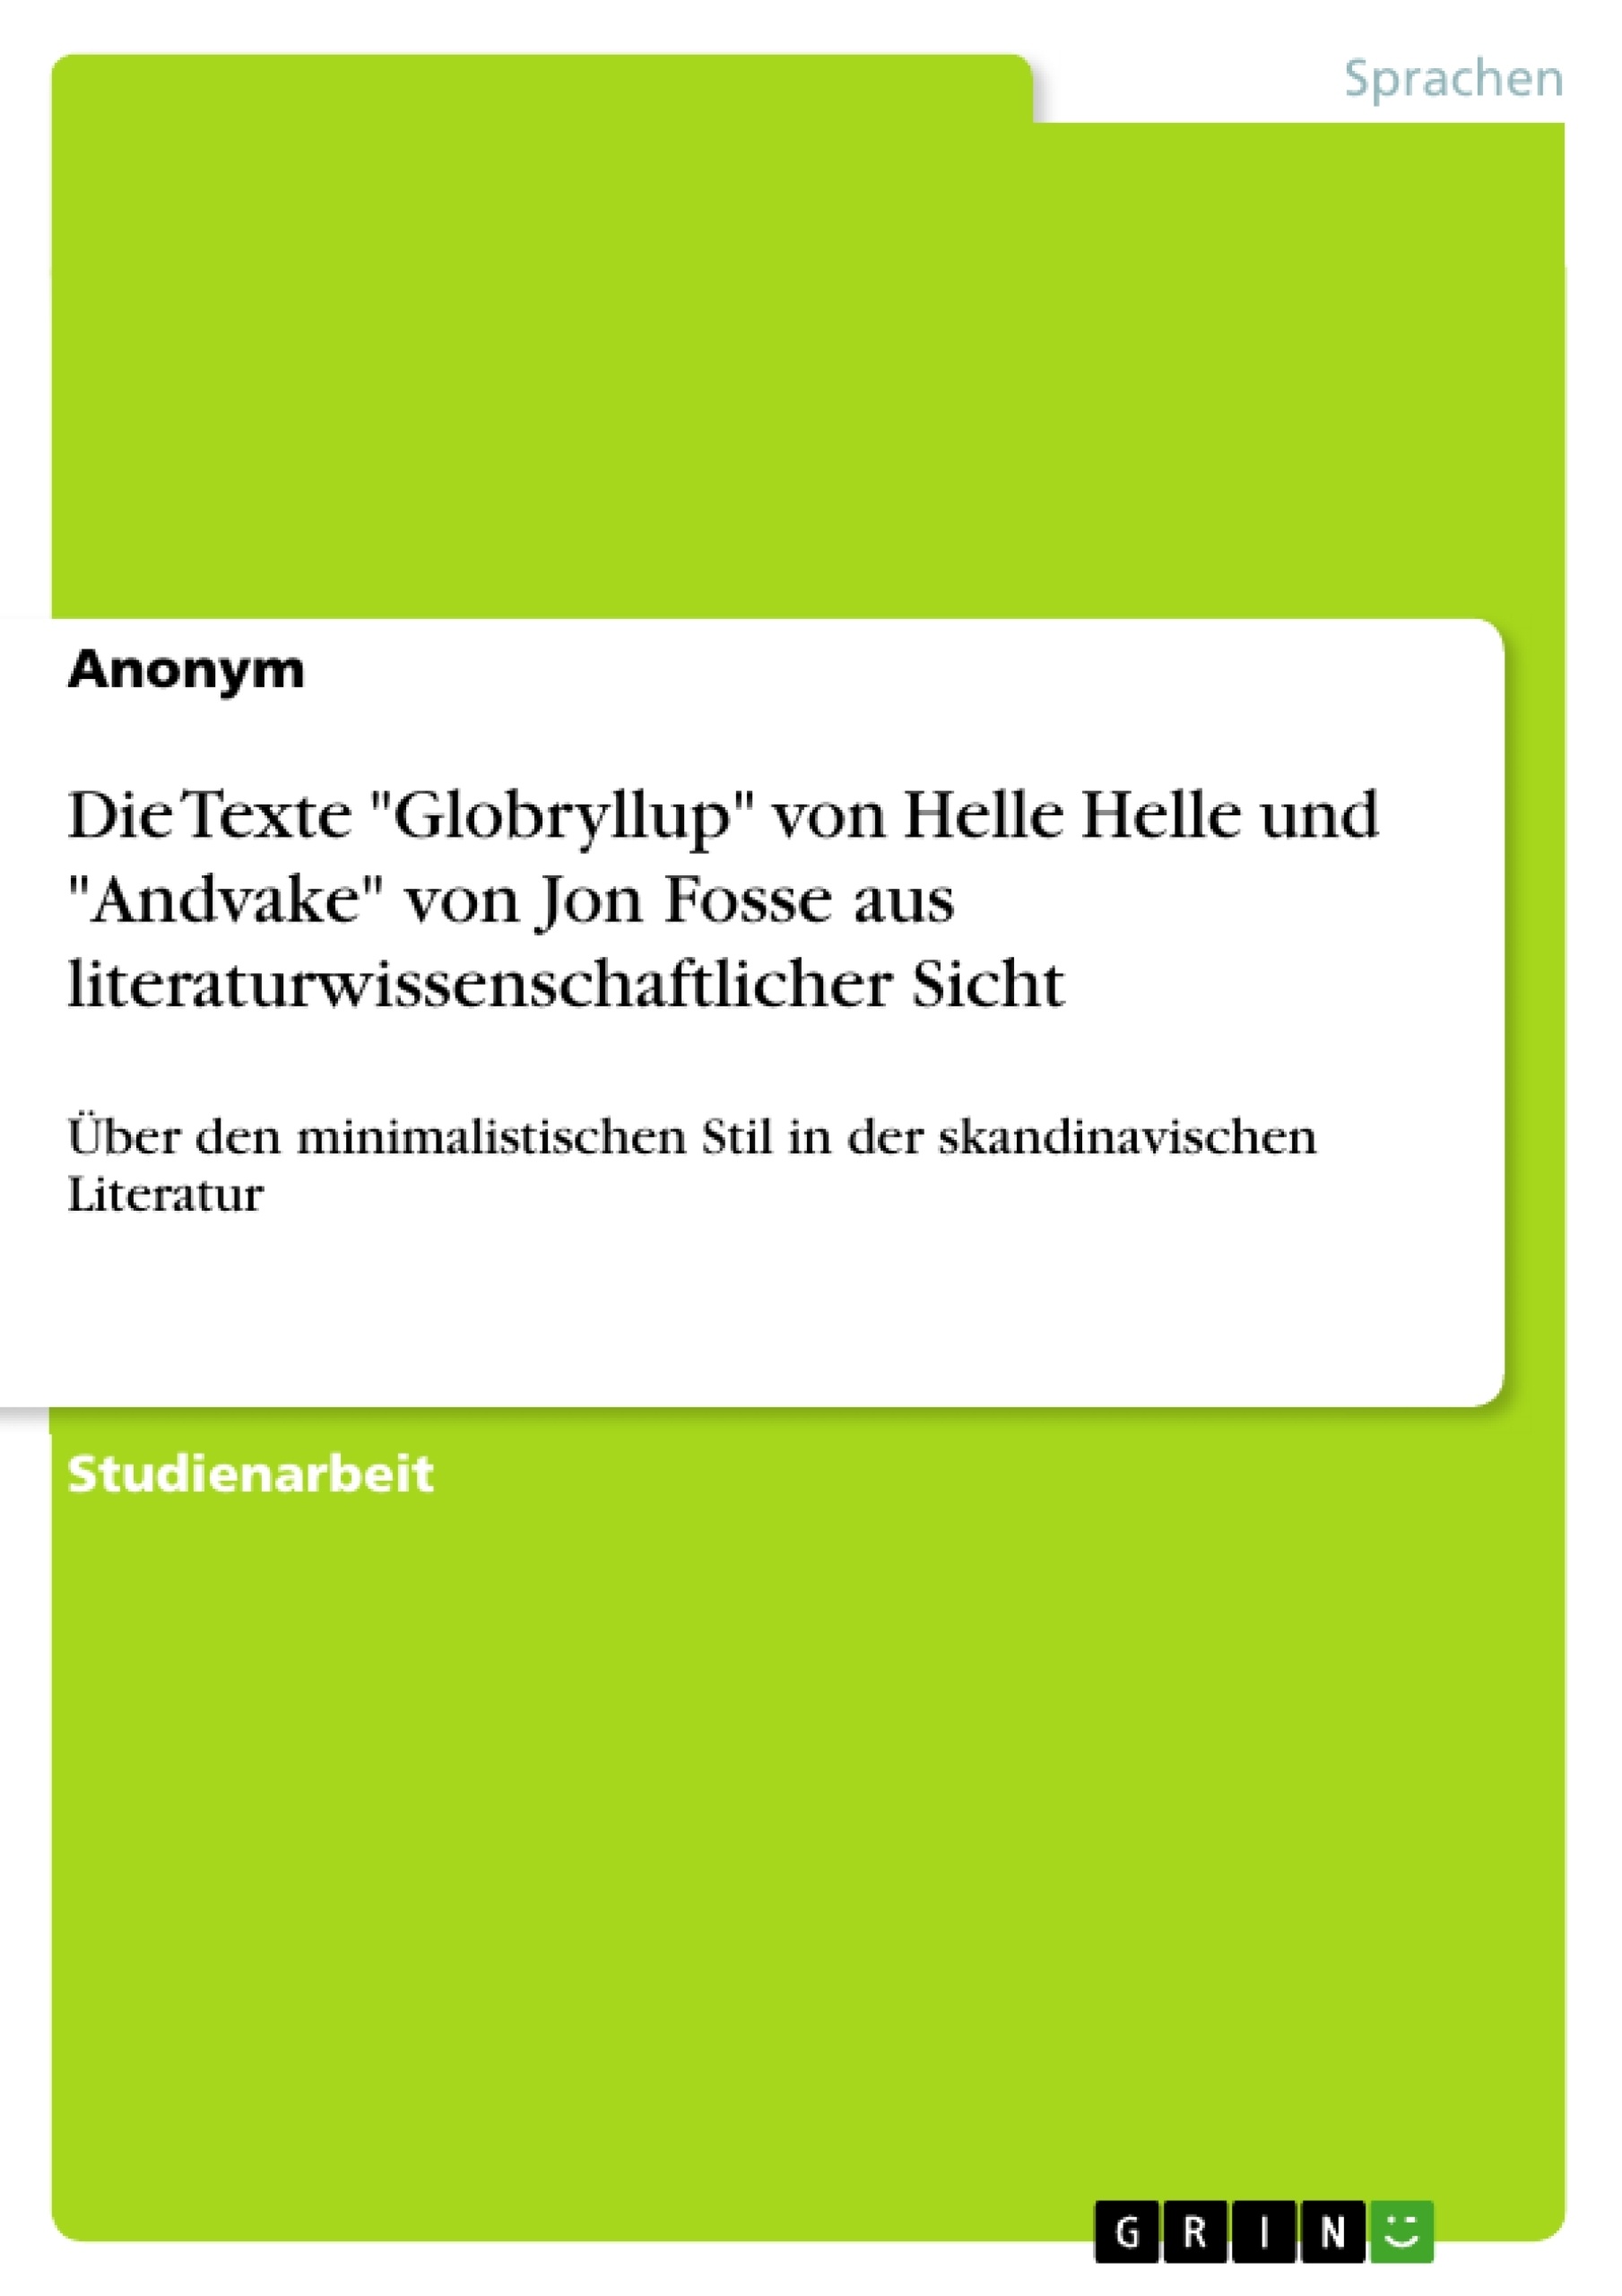 Title: Die Texte "Globryllup" von Helle Helle und "Andvake" von Jon Fosse aus literaturwissenschaftlicher Sicht